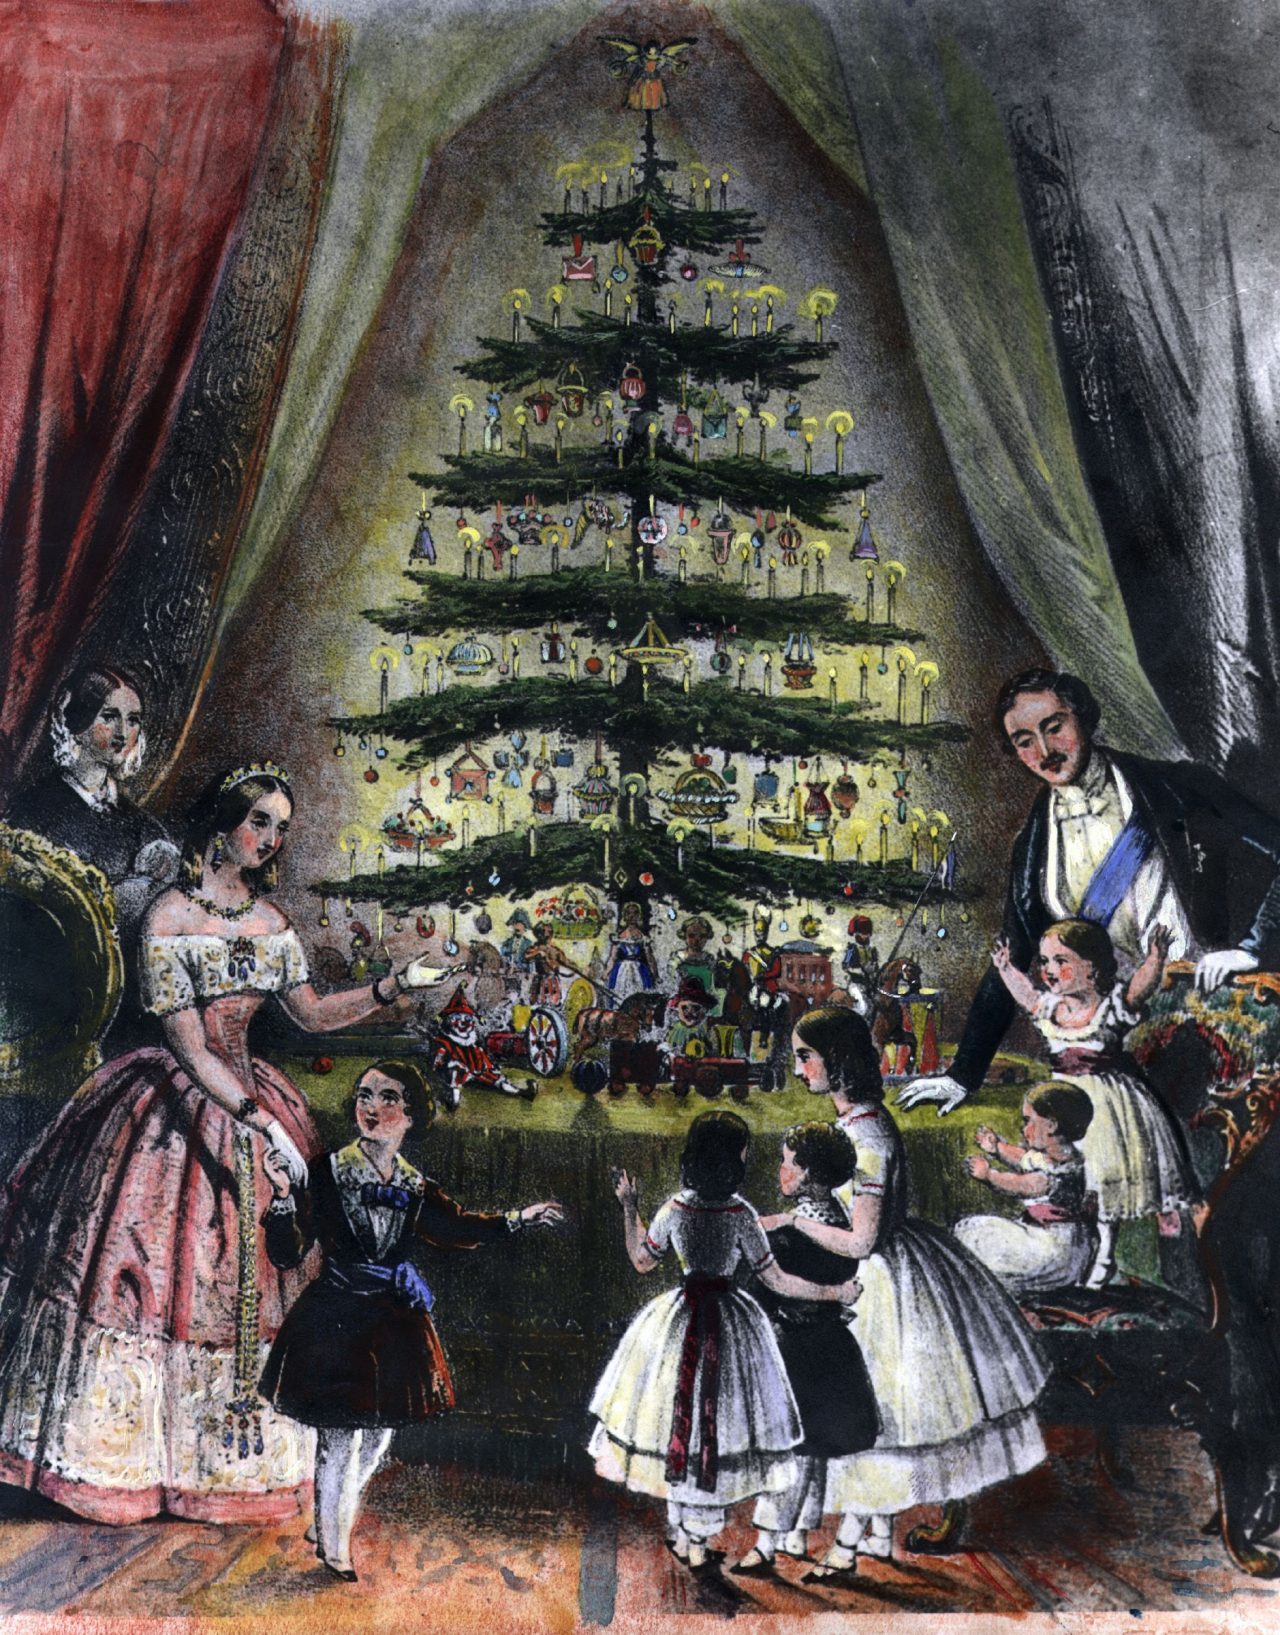 Illustrasjon av Dronning Victoria av England, Prince Albert og deres barn, desember 1848.